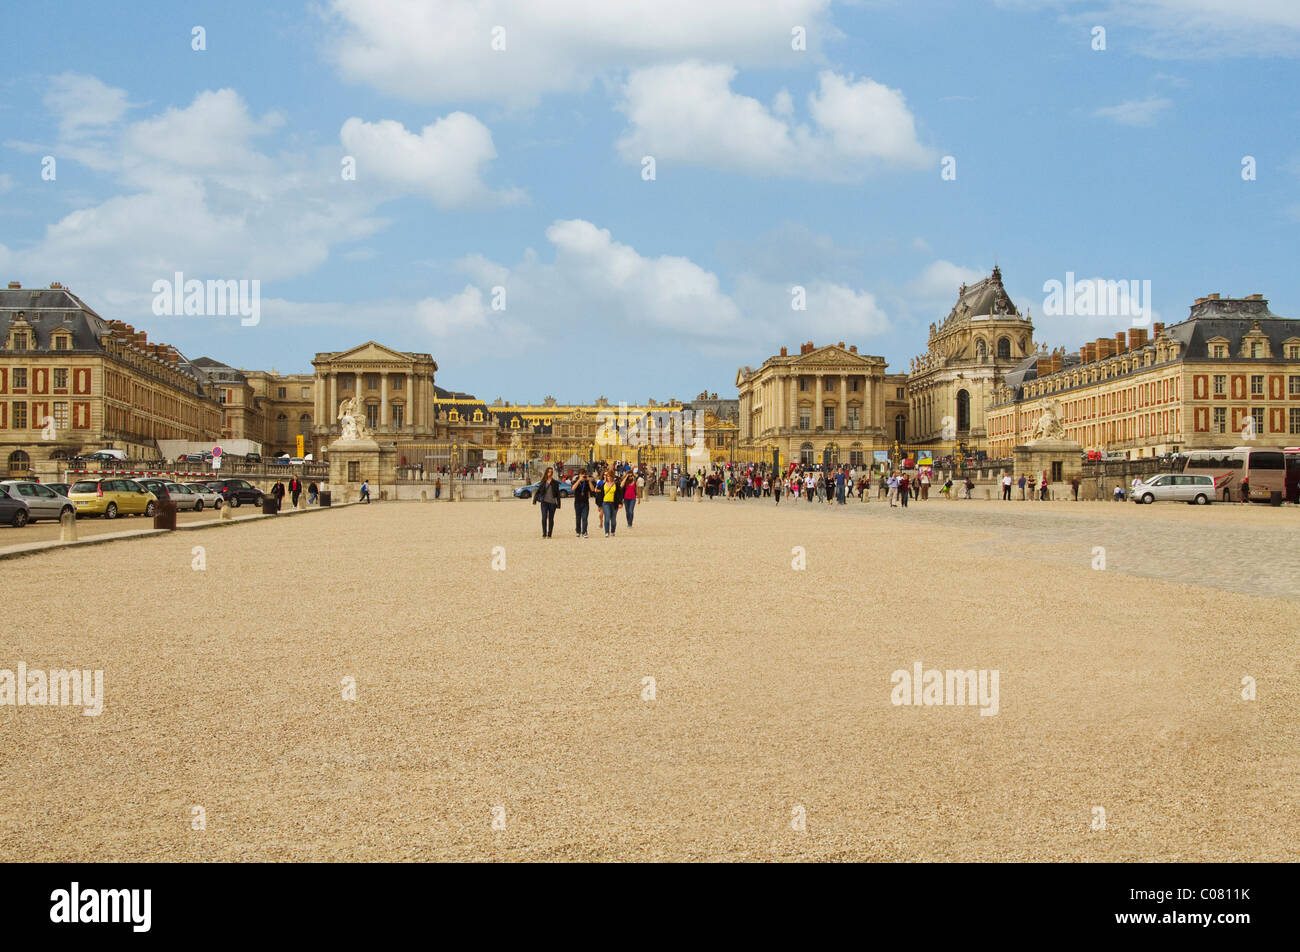 Tourists in front of a palace, Chateau de Versailles, Versailles, Paris, France Stock Photo